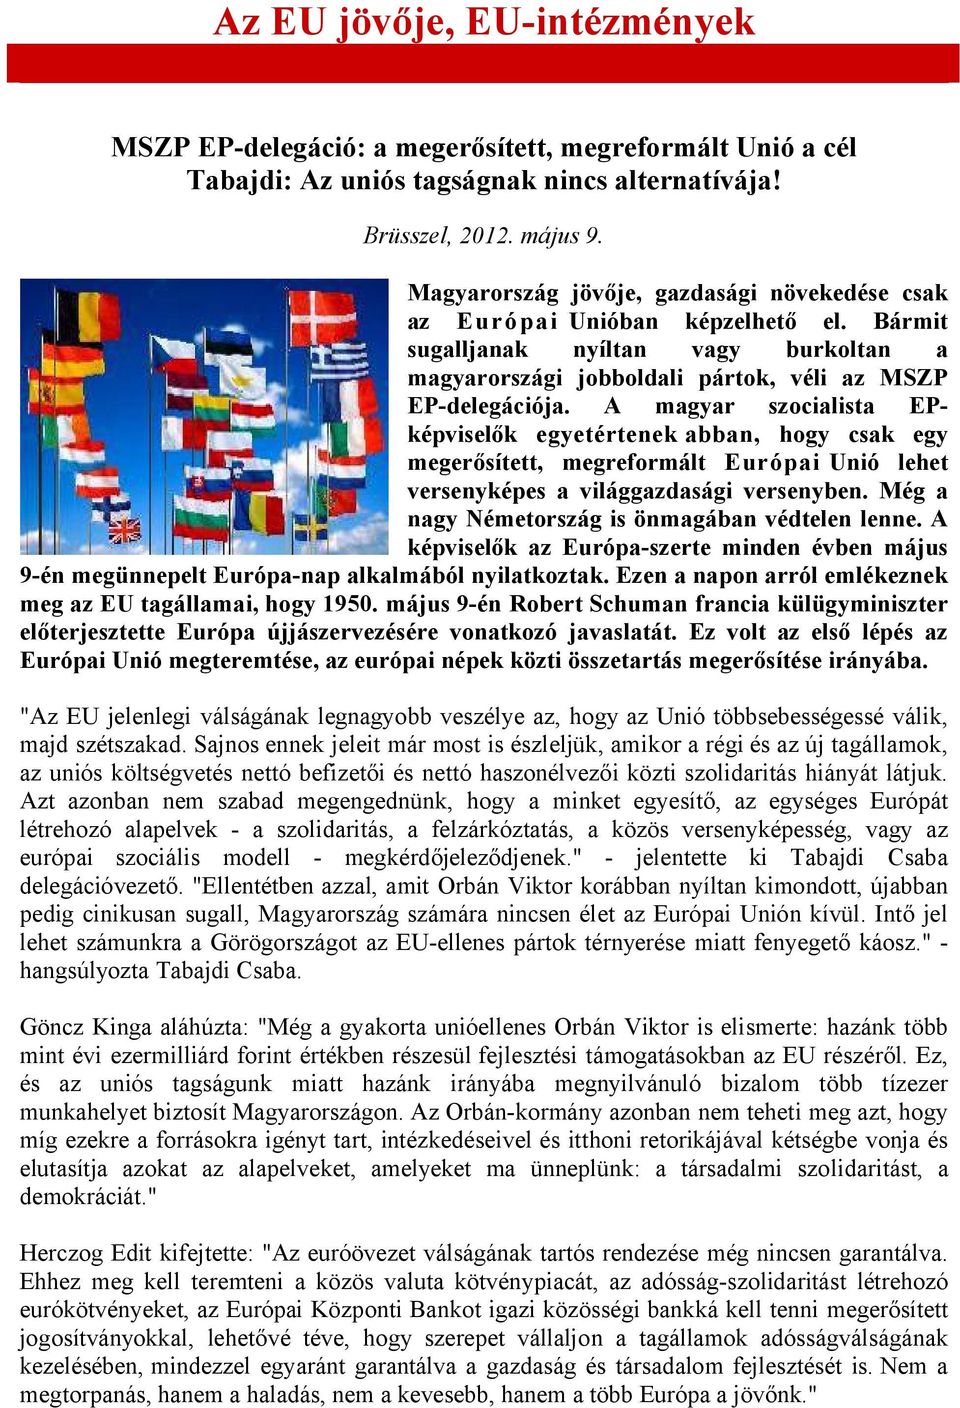 A magyar szocialista EPképviselők egyetértenek abban, hogy csak egy megerősített, megreformált Európai Unió lehet versenyképes a világgazdasági versenyben.